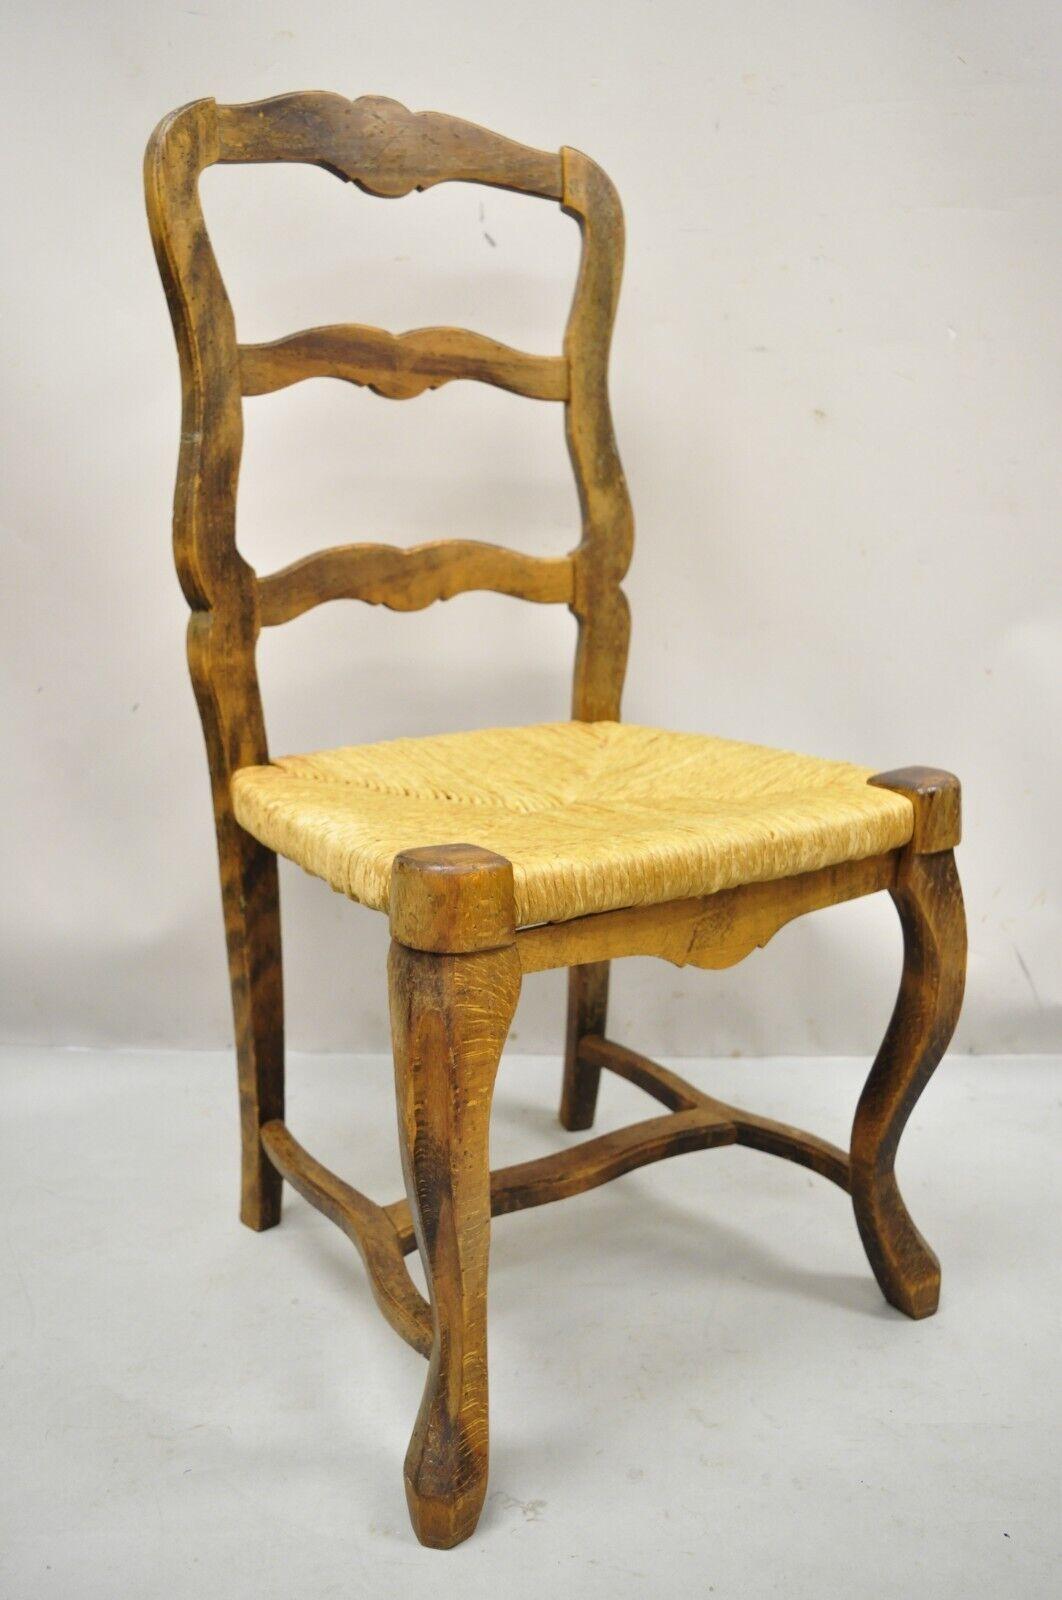 Vieille chaise de salle à manger provinciale en bois vieilli avec dossier en échelle et siège en jonc. Les caractéristiques de l'article sont les suivantes : assise en jonc tressé, base en forme de civière, dossier en forme d'échelle, cadre en bois